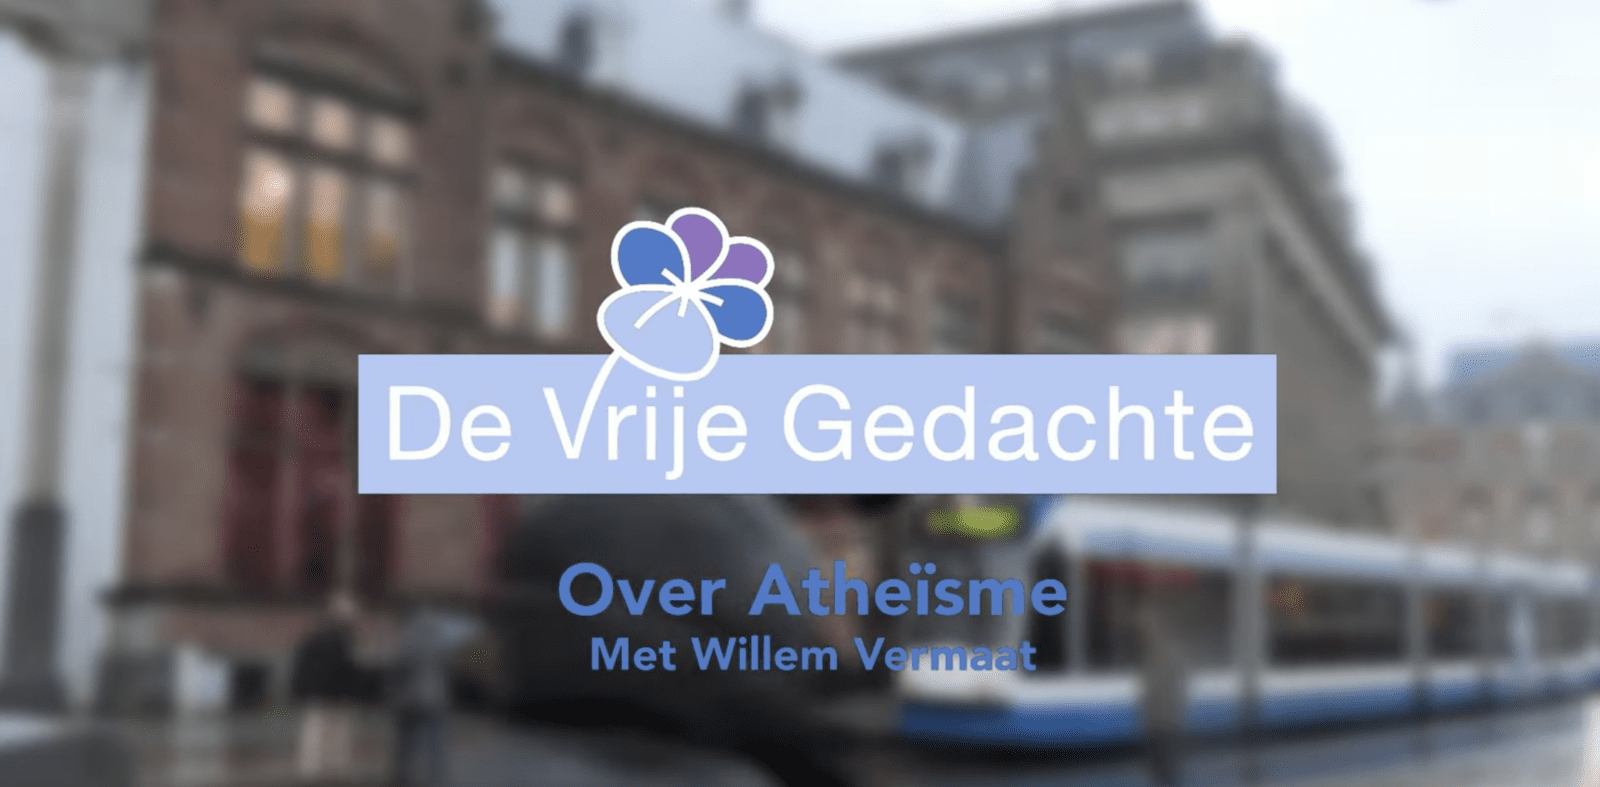 Podcast met Willem Vermaat over Atheïsme